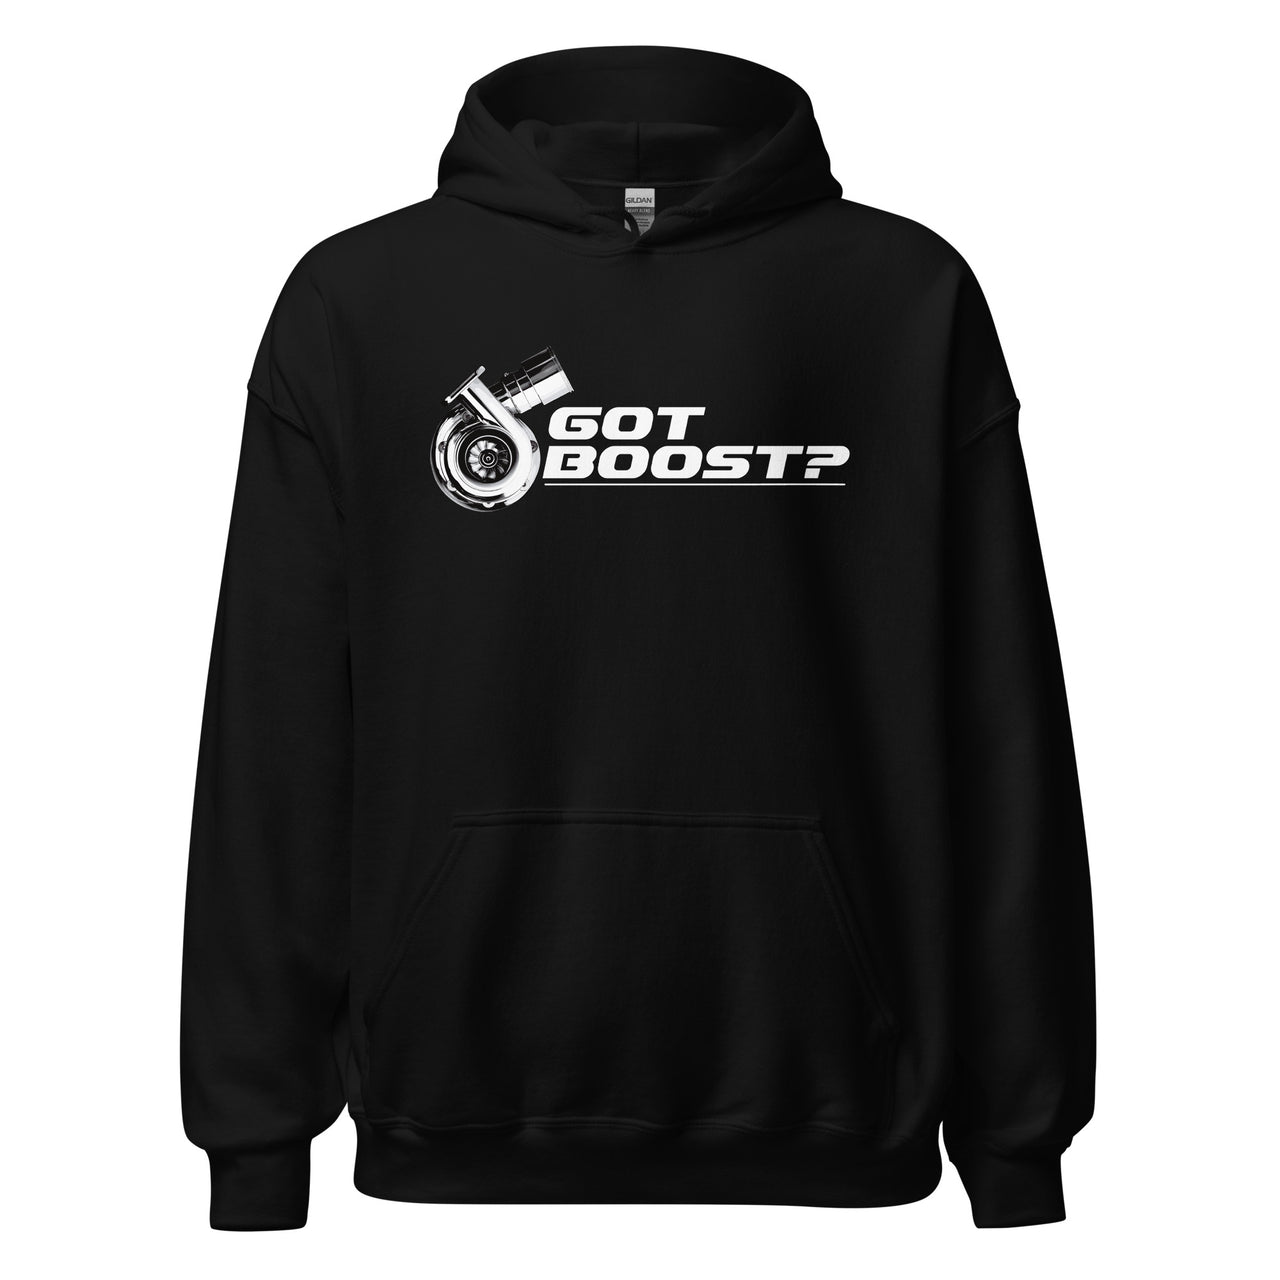 Got Boost? Turbo Hoodie Sweatshirt